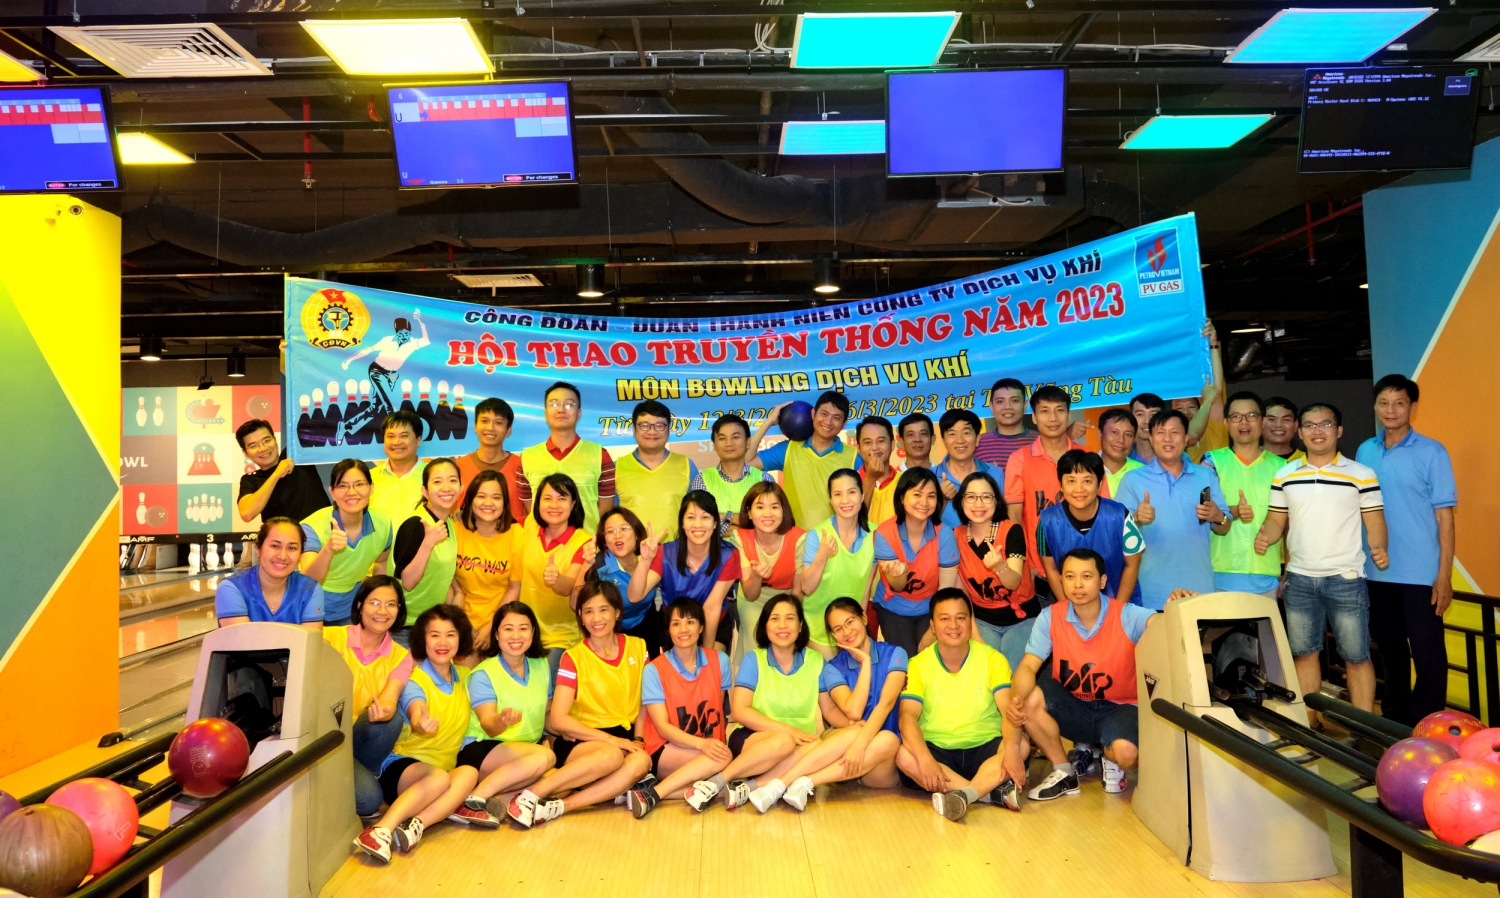 Tập thể DVK vui họp mặt thi đấu Bowling